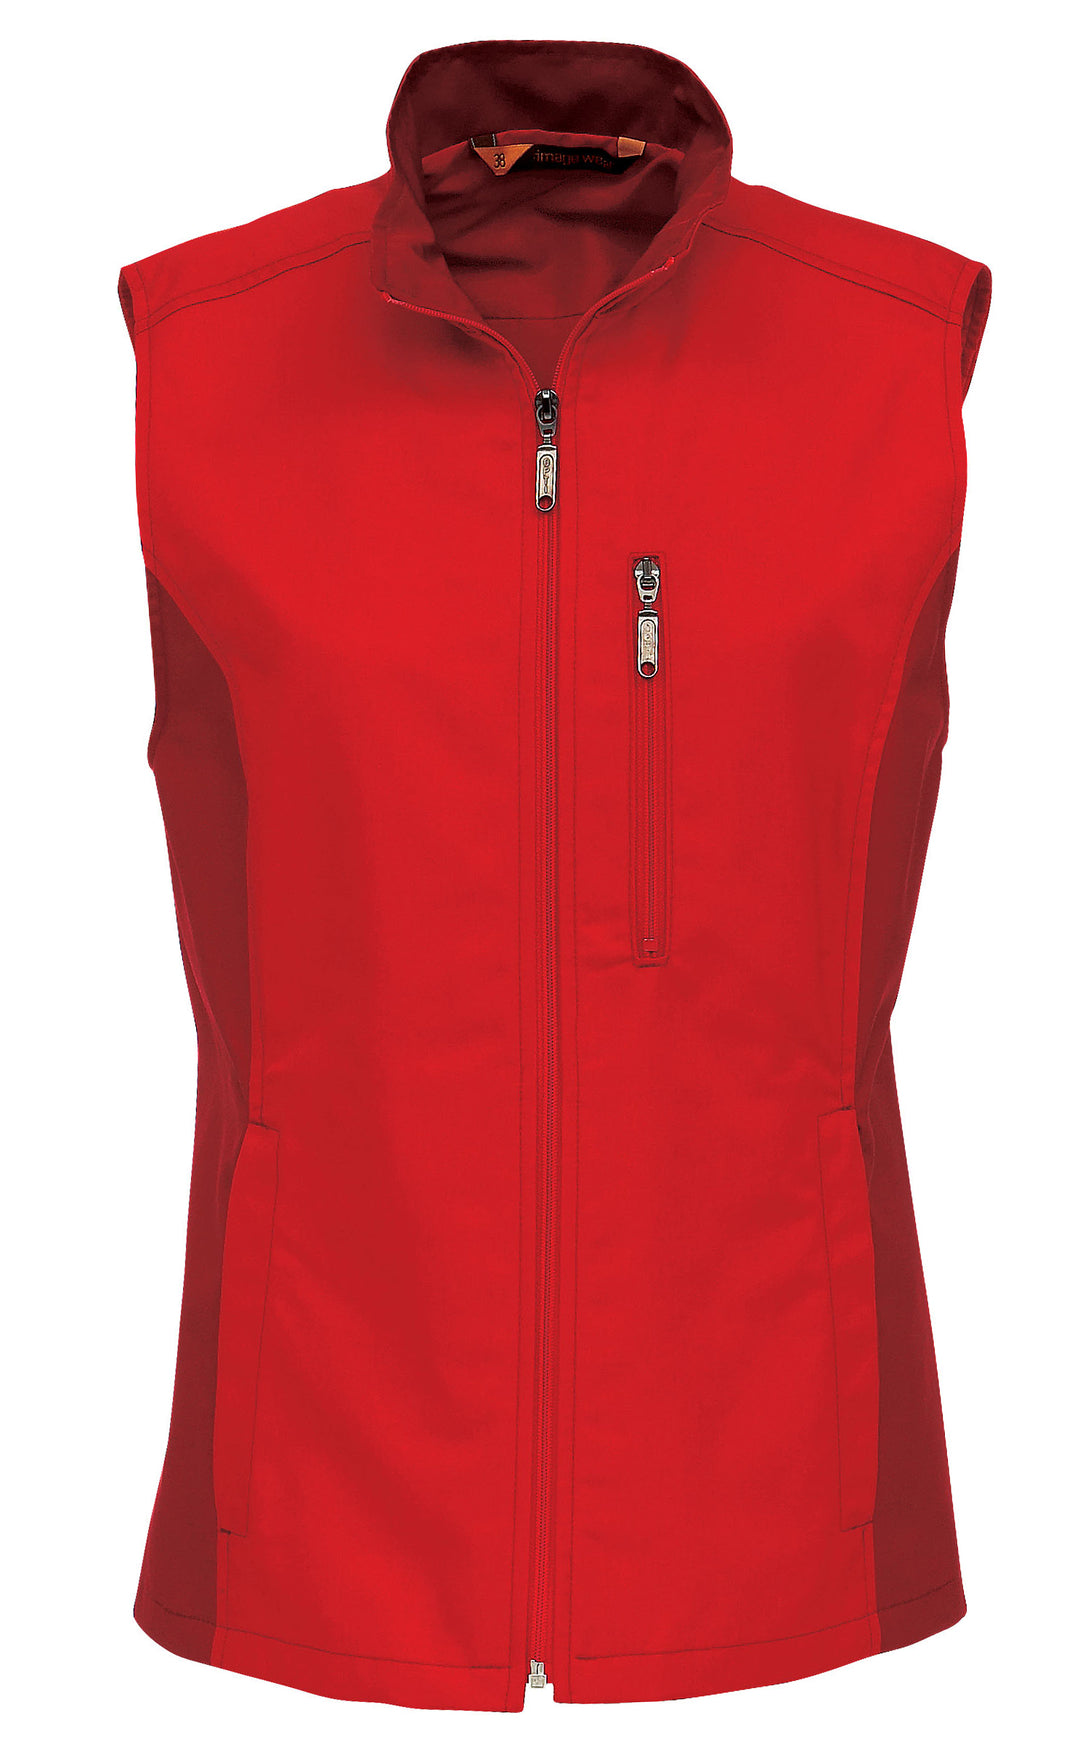 Punainen kangasliivi, jossa vetoketju edessä. Rintatasku myös vetoketjullinen, alataskut. Aavistuksen vartalonmyötäinen malli.